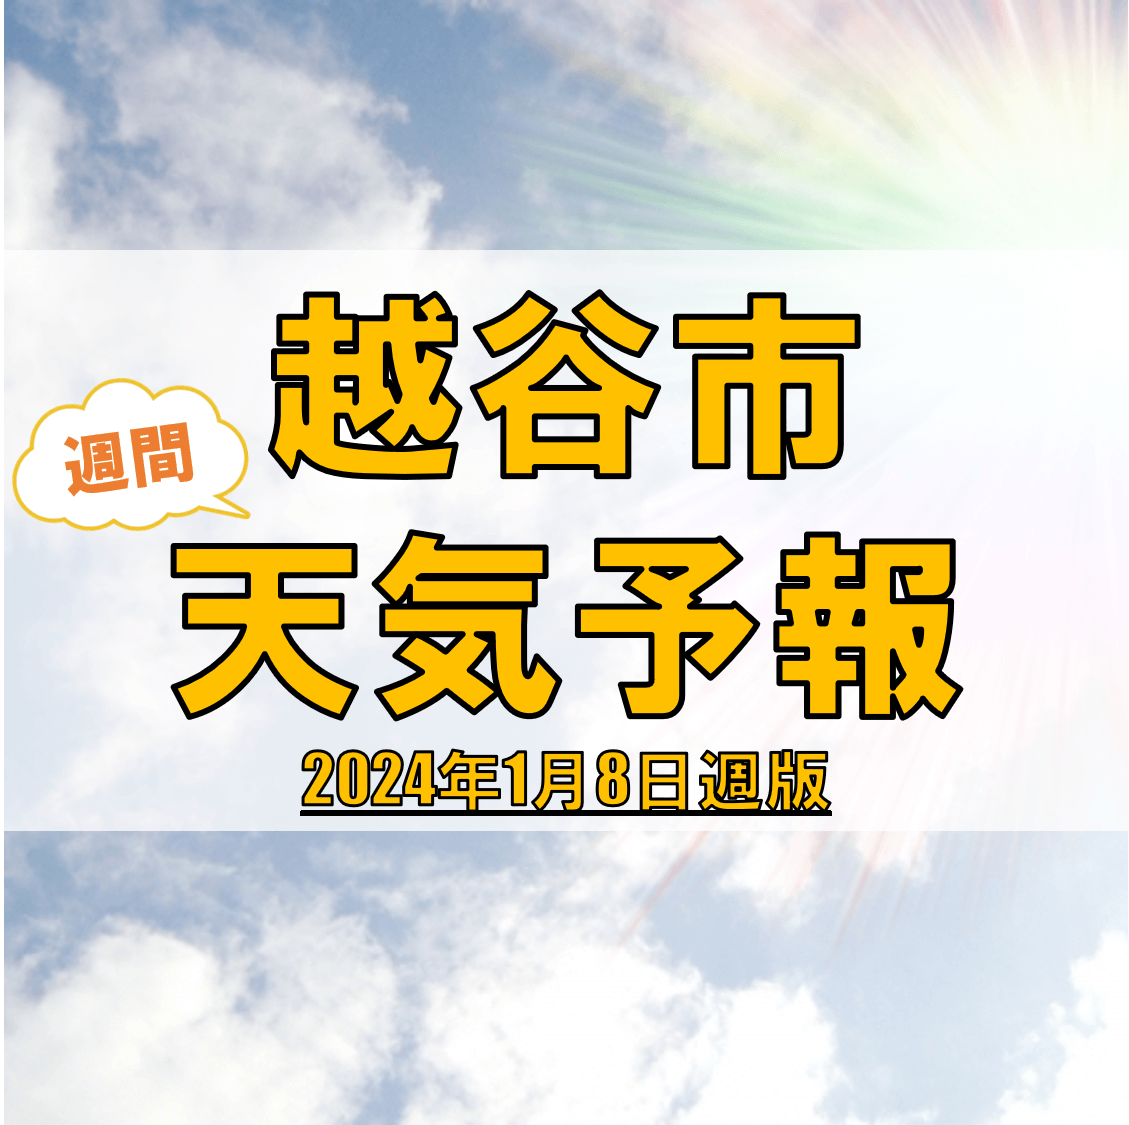 越谷市の天気 週間予報【2024年1月8日週】